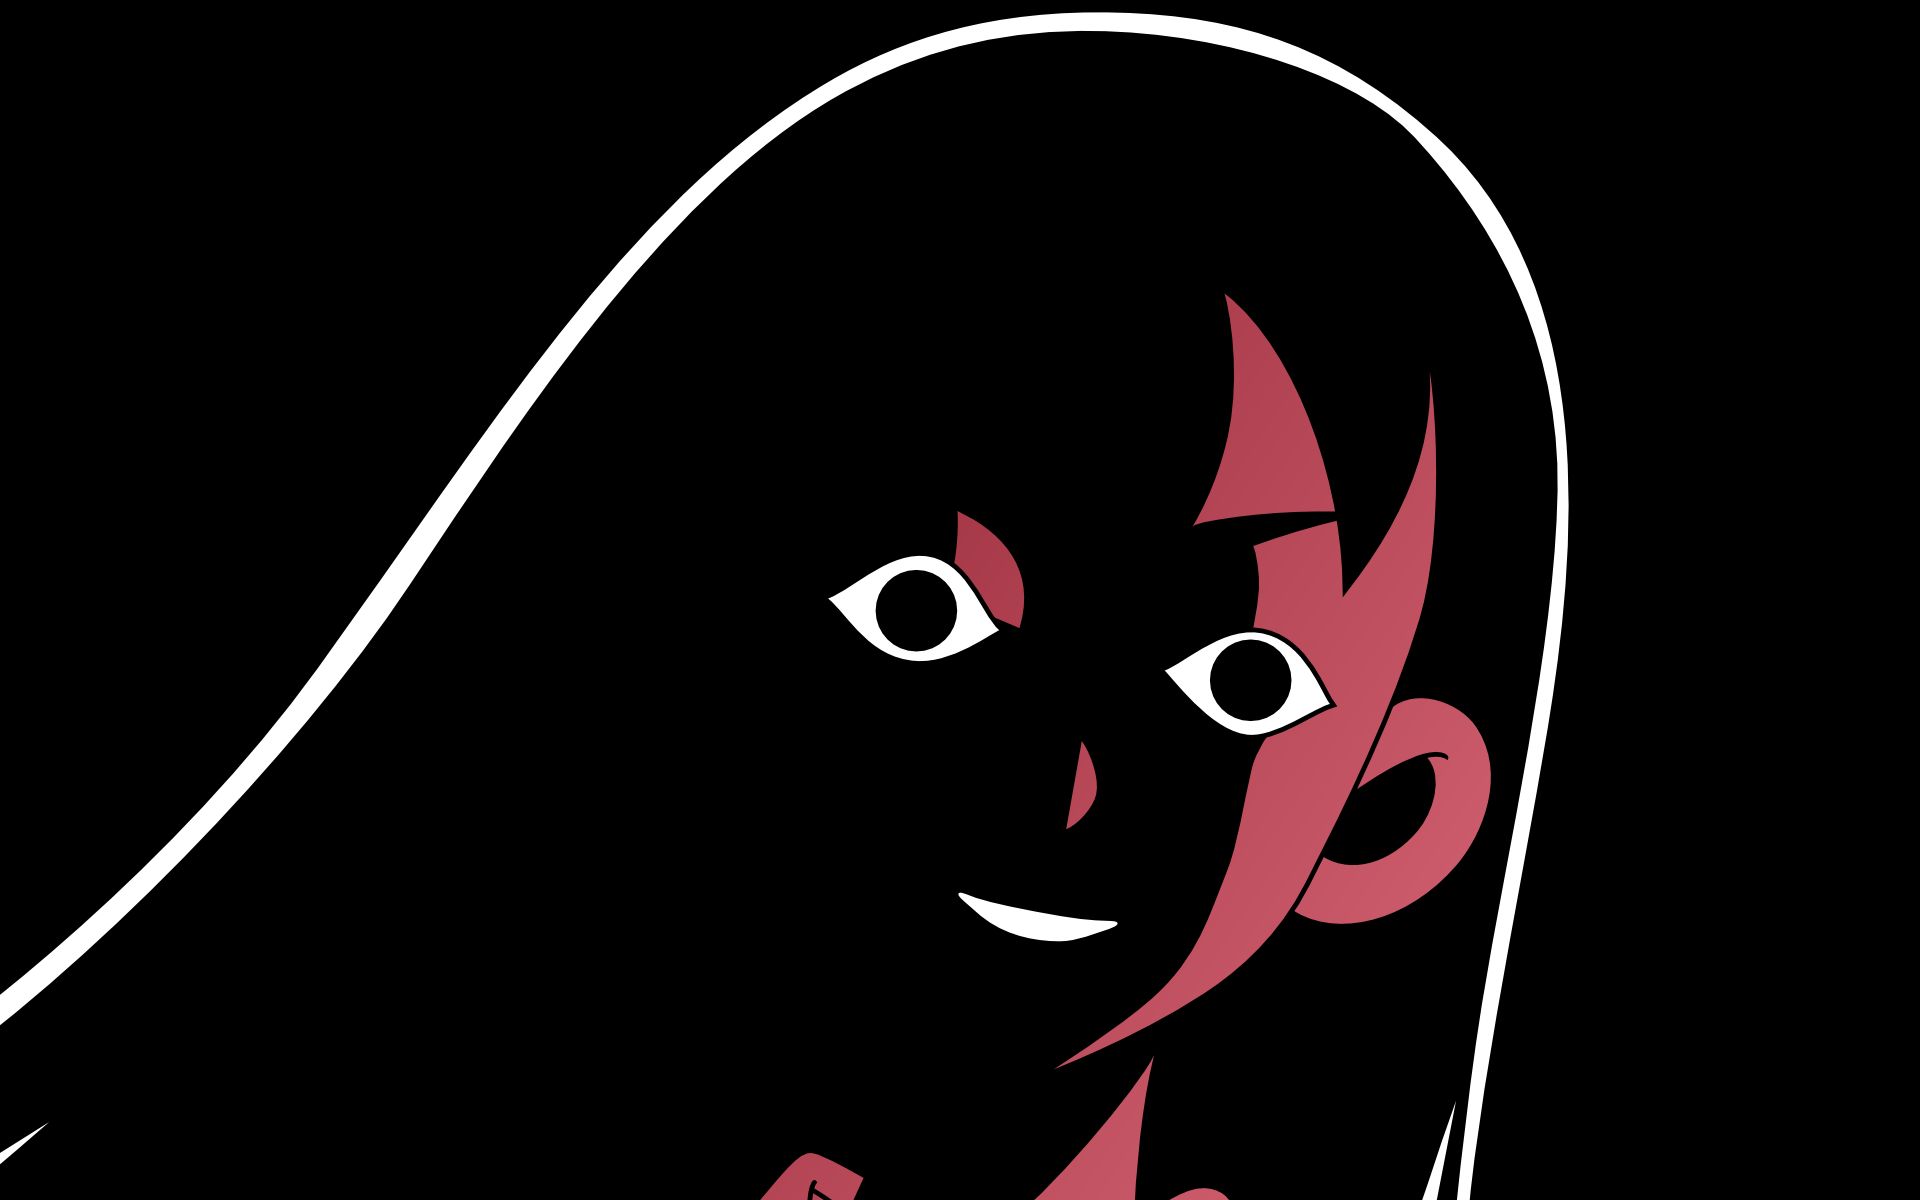 Download mobile wallpaper Anime, Sayonara Zetsubou Sensei, Chiri Kitsu for free.